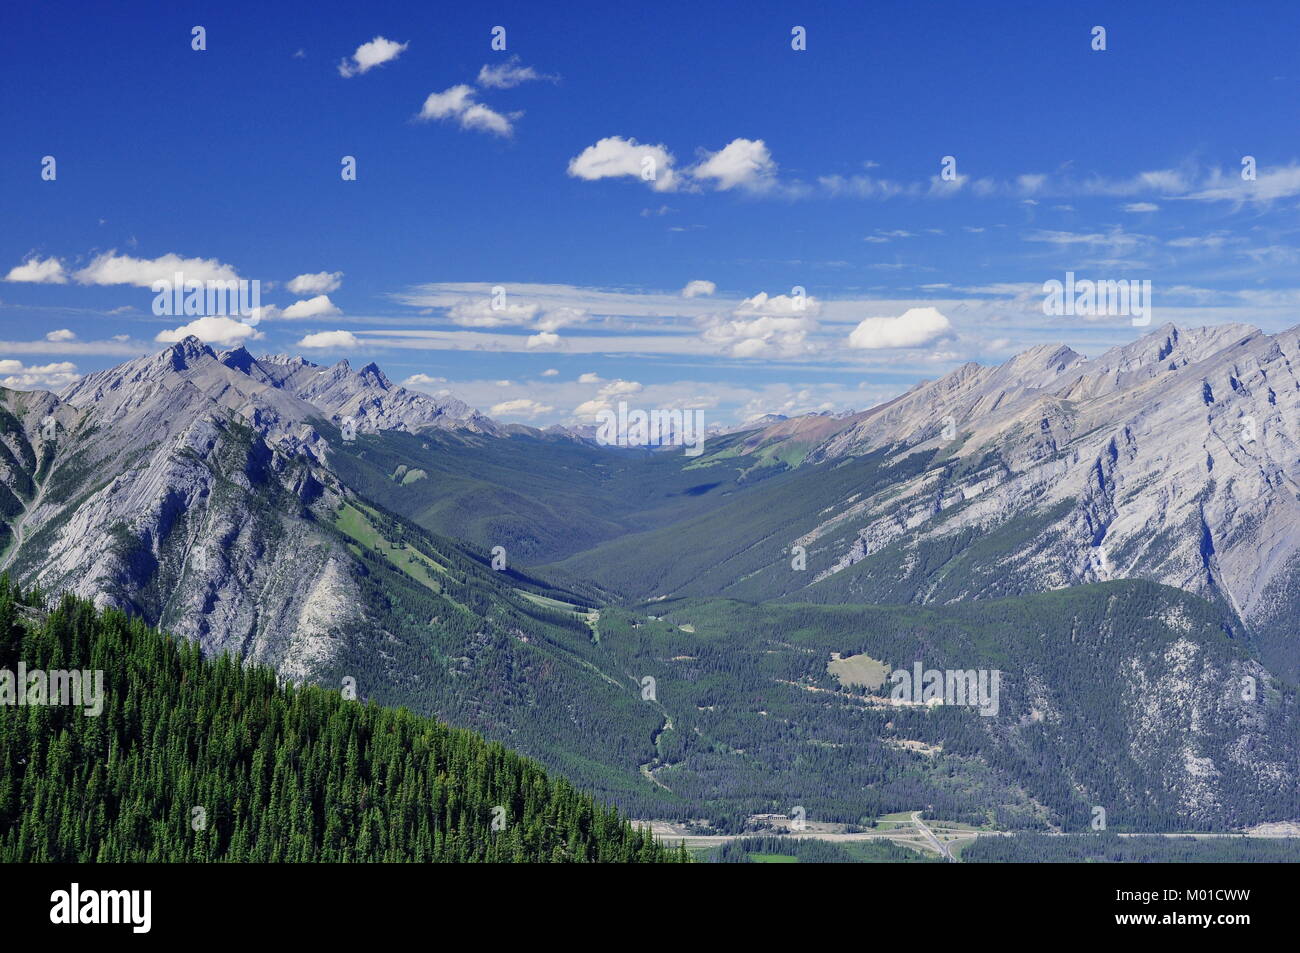 Una lunga valle ondulata nel Parco Nazionale di Banff in Alberta Canada, circondata dalle incredibili Montagne Rocciose. Foto Stock